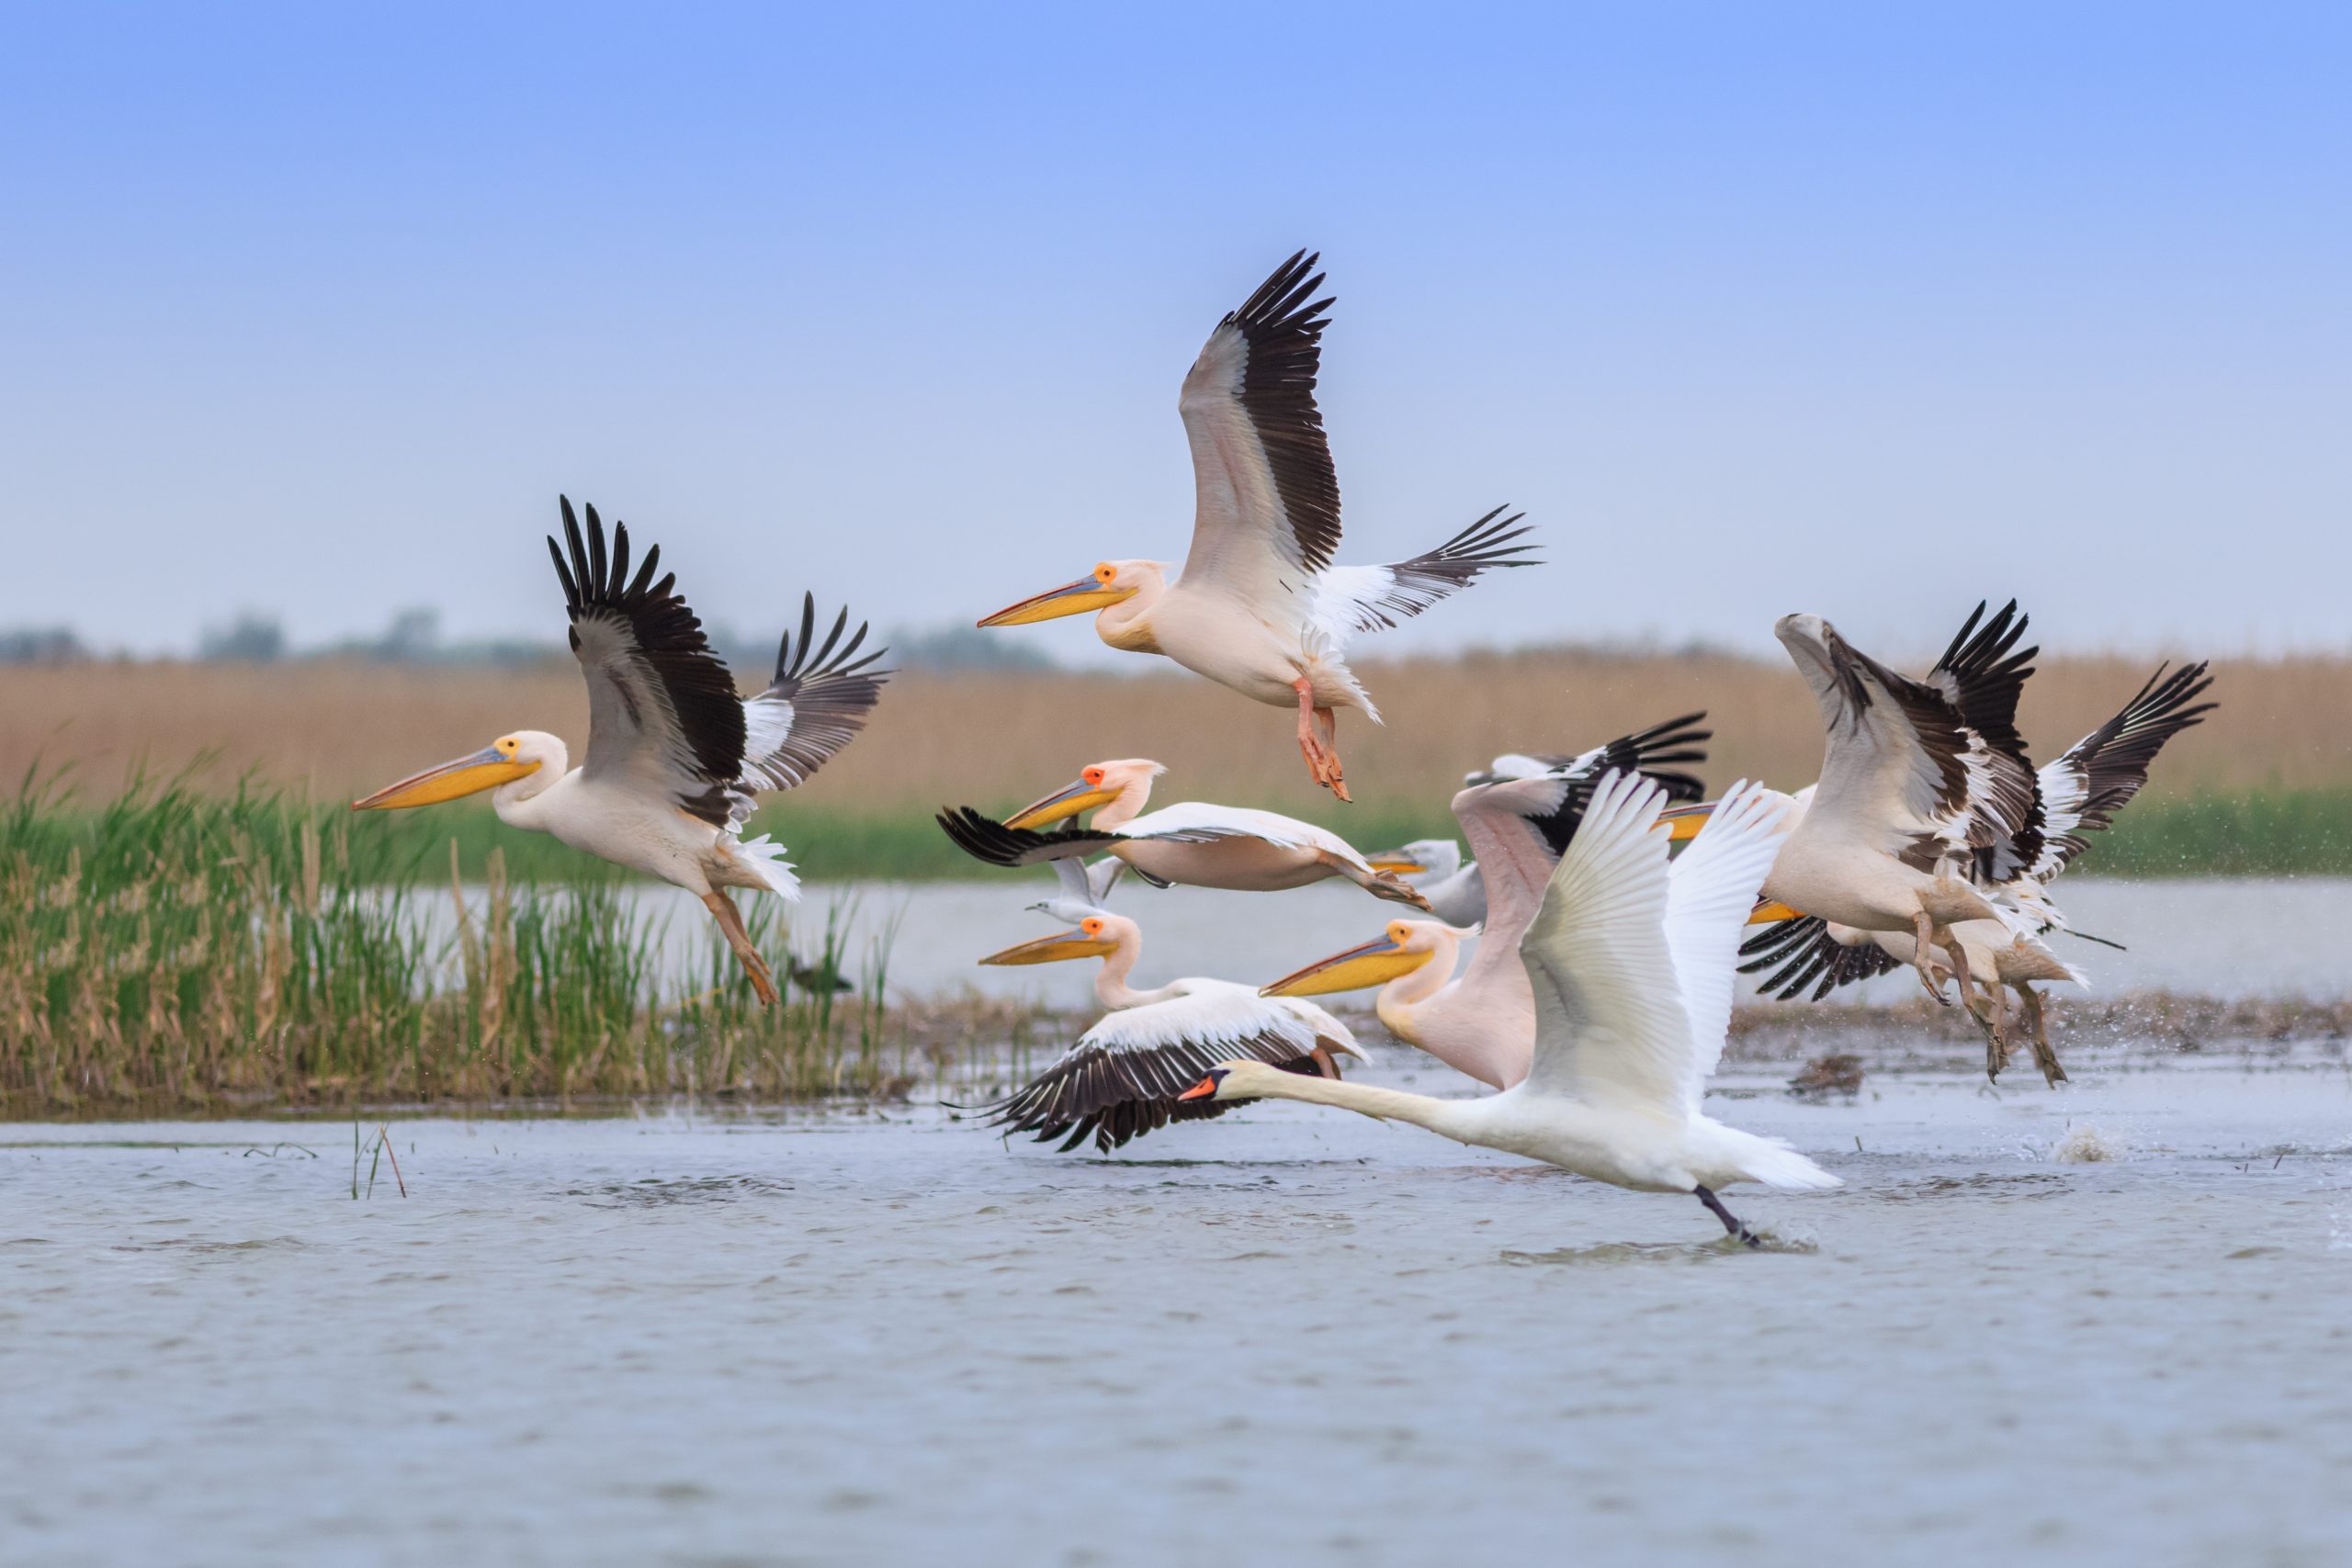 white pelicans (pelecanus onocrotalus) in Danube Delta, Romania